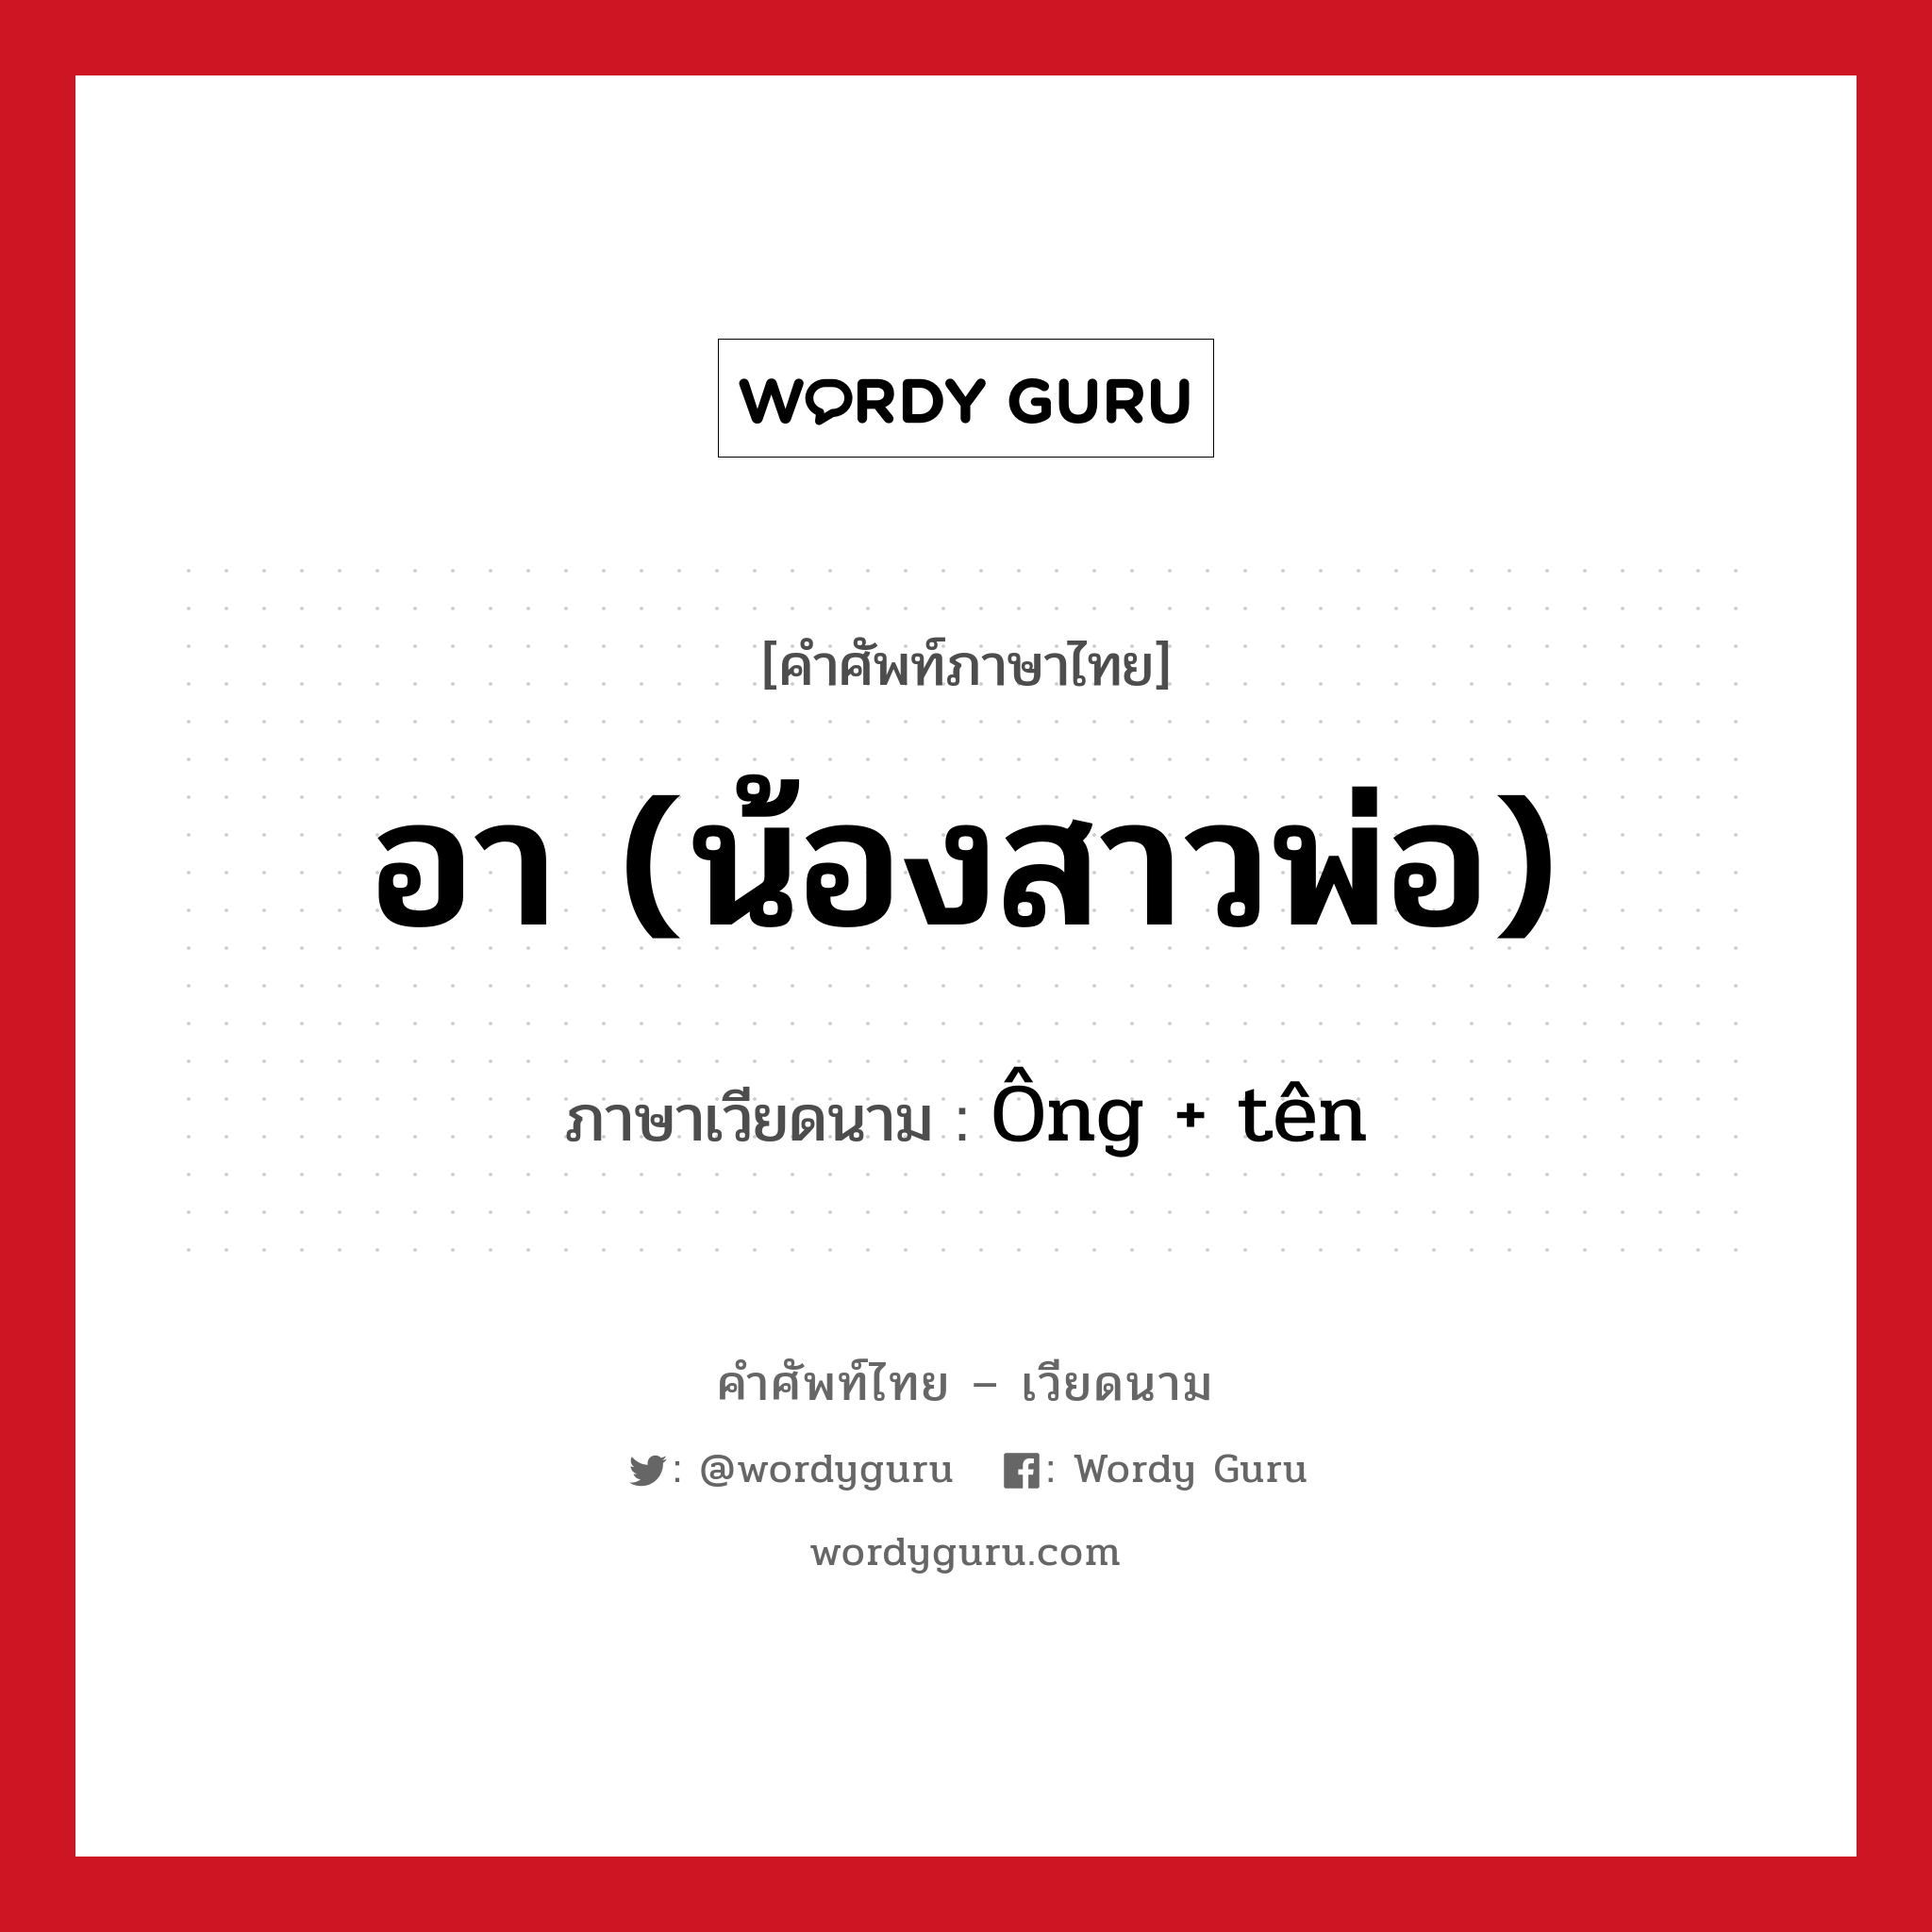 อา (น้องสาวพ่อ) ภาษาเวียดนามคืออะไร, คำศัพท์ภาษาไทย - เวียดนาม อา (น้องสาวพ่อ) ภาษาเวียดนาม Ông + tên หมวด เครือญาติ หมวด เครือญาติ